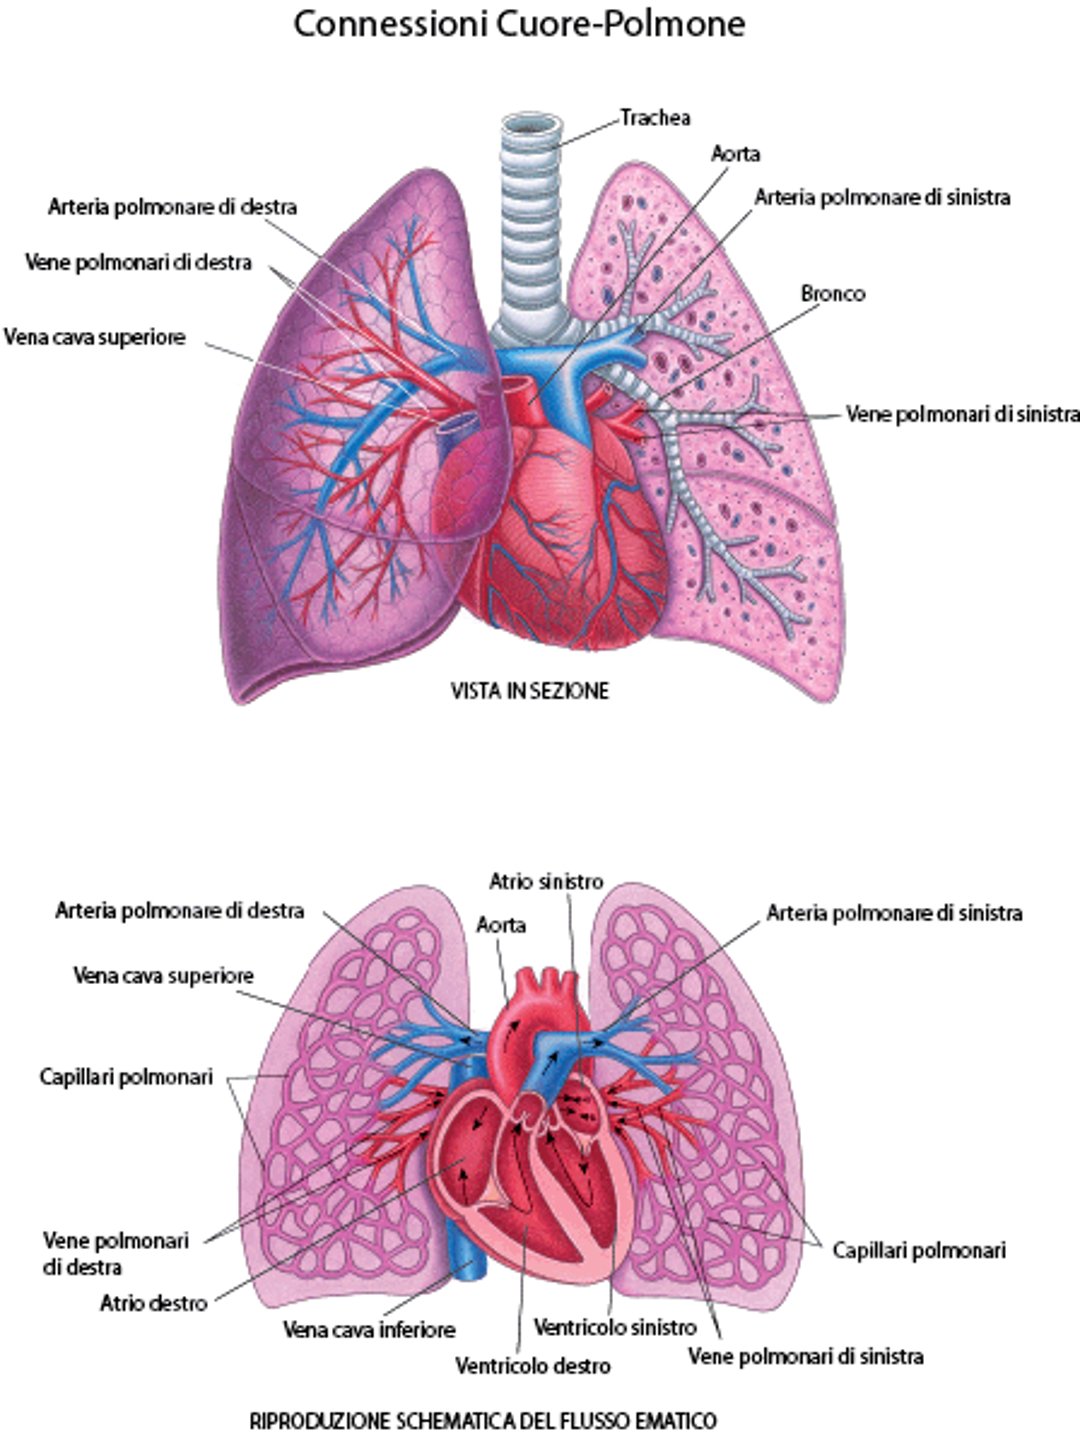 Connessioni cuore-polmone